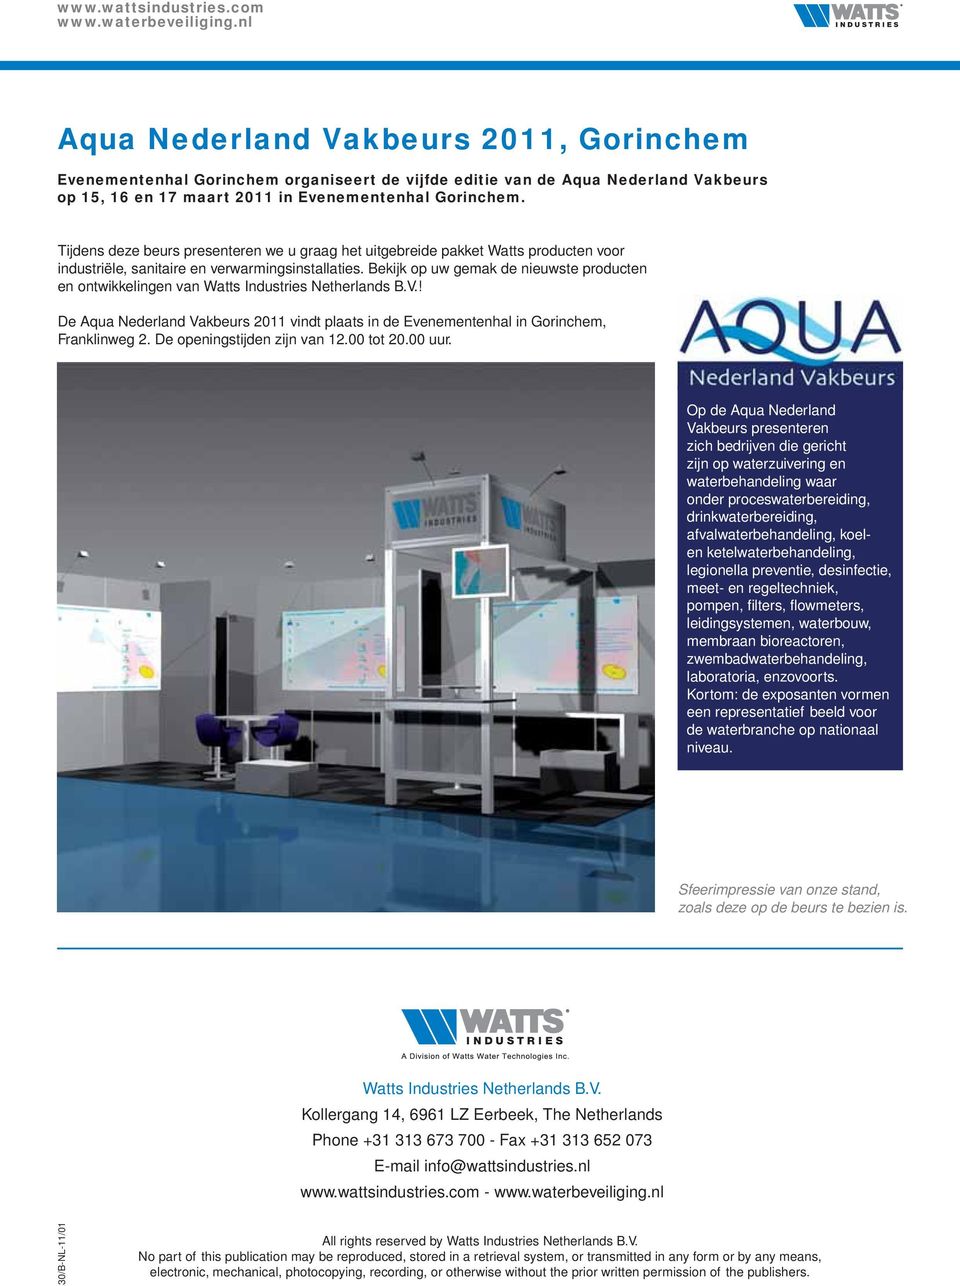 Bekijk op uw gemak de nieuwste producten en ontwikkelingen van Watts Industries Netherlands B.V.! De Aqua Nederland Vakbeurs 2011 vindt plaats in de Evenementenhal in Gorinchem, Franklinweg 2.